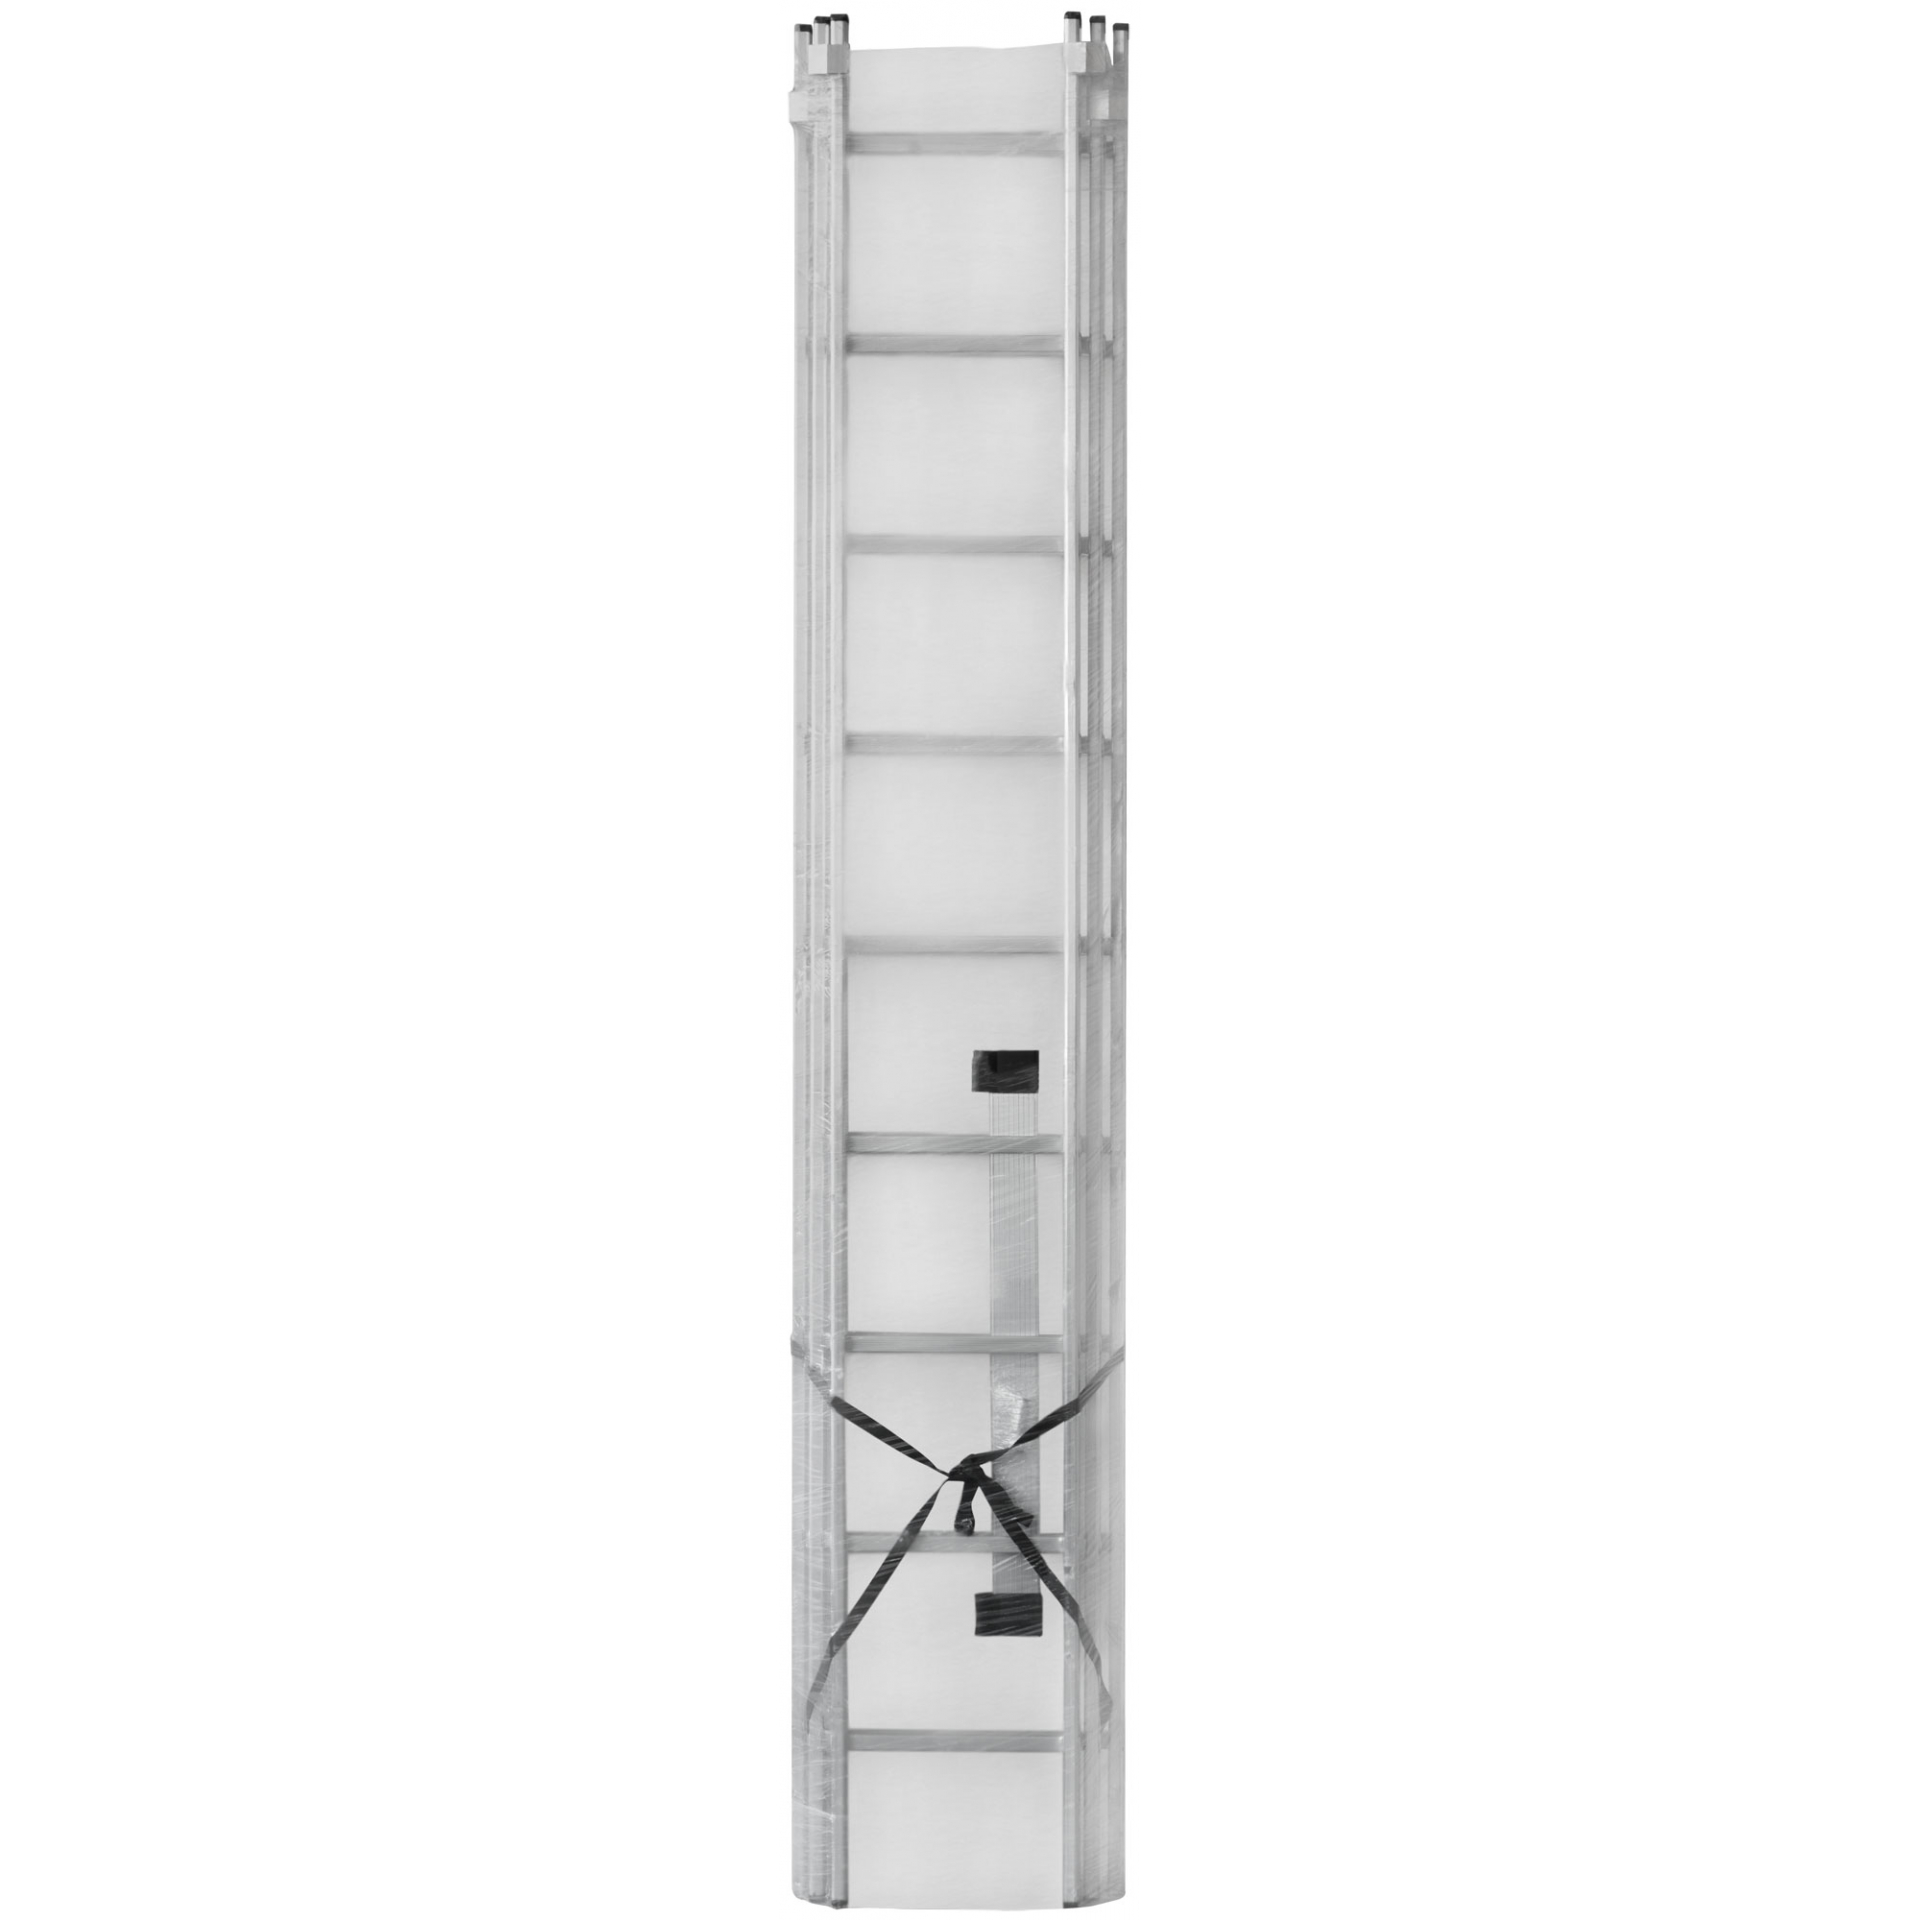 Лестница трехсекционная алюминиевая, 3 х 9 ступеней, H=257/426/591 см, вес 11,18 кг